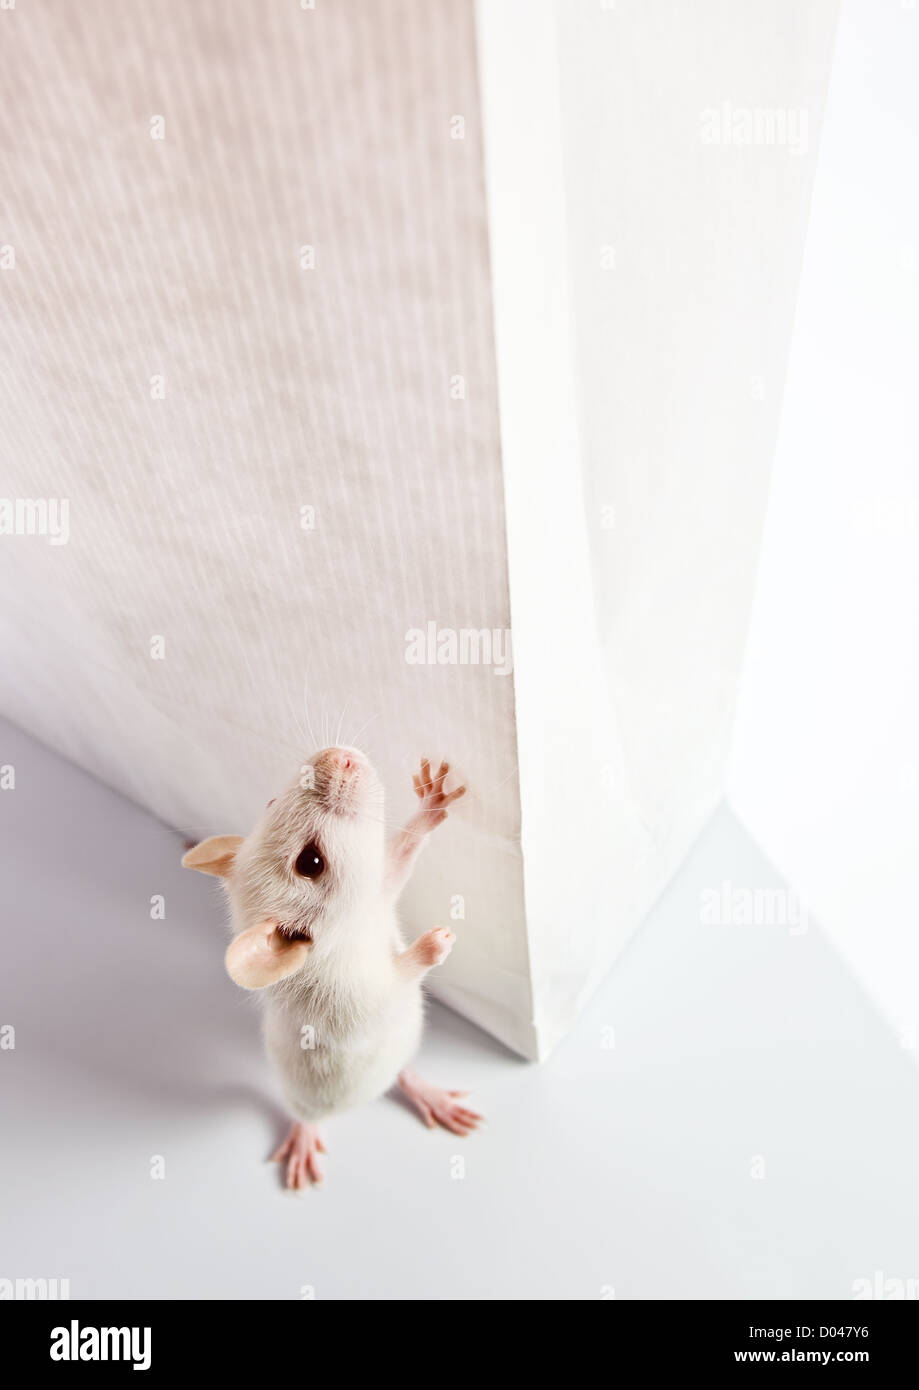 süße weiße Ratte untersuchen eine weiße Tasche Stockfoto